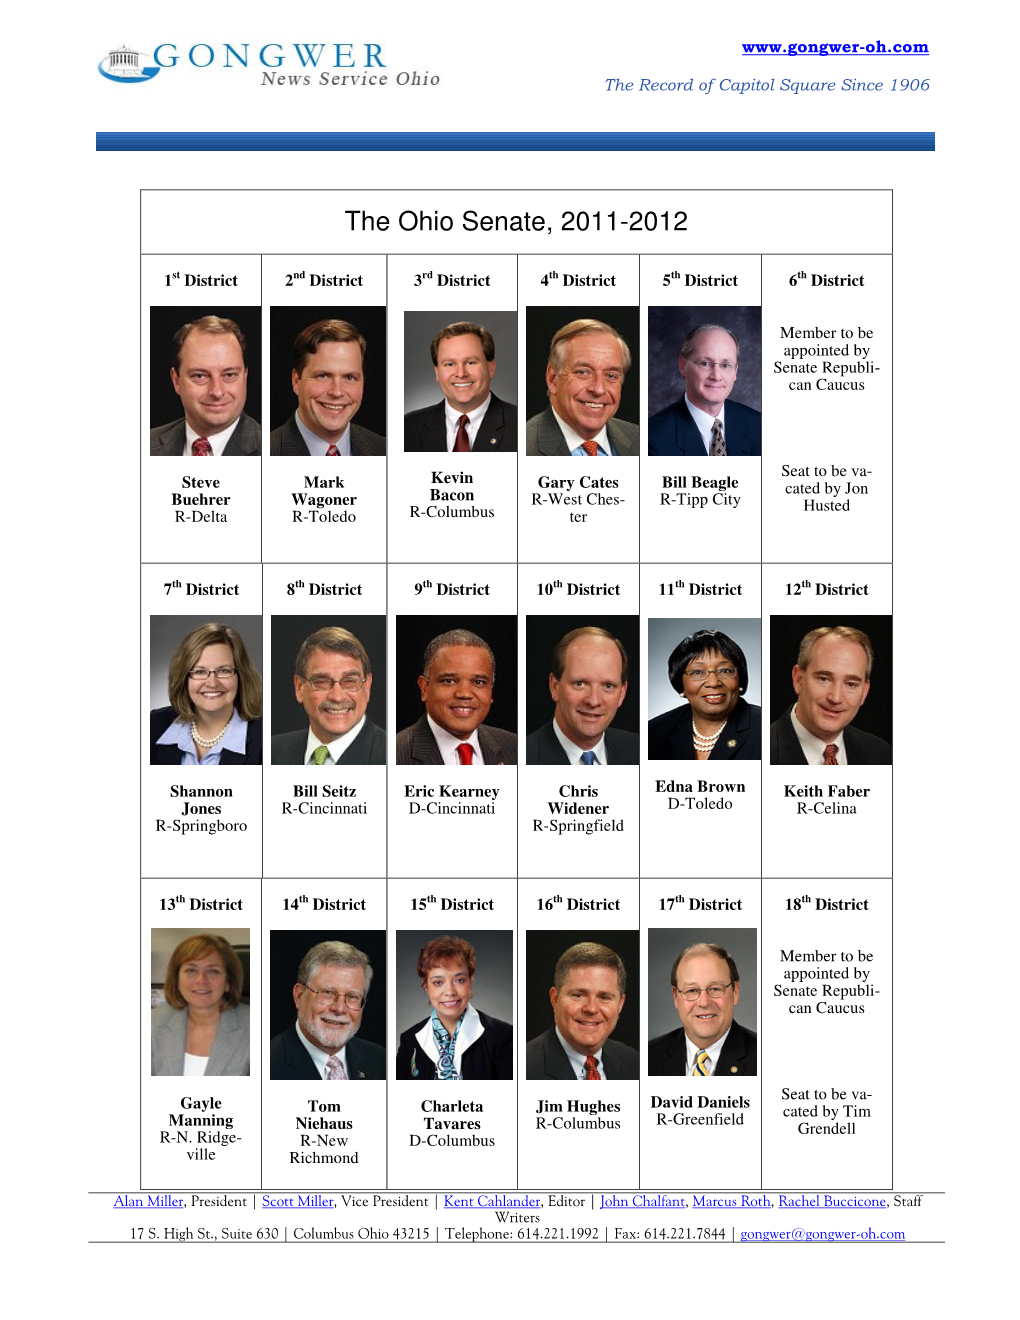 The Ohio Senate, 2011-2012